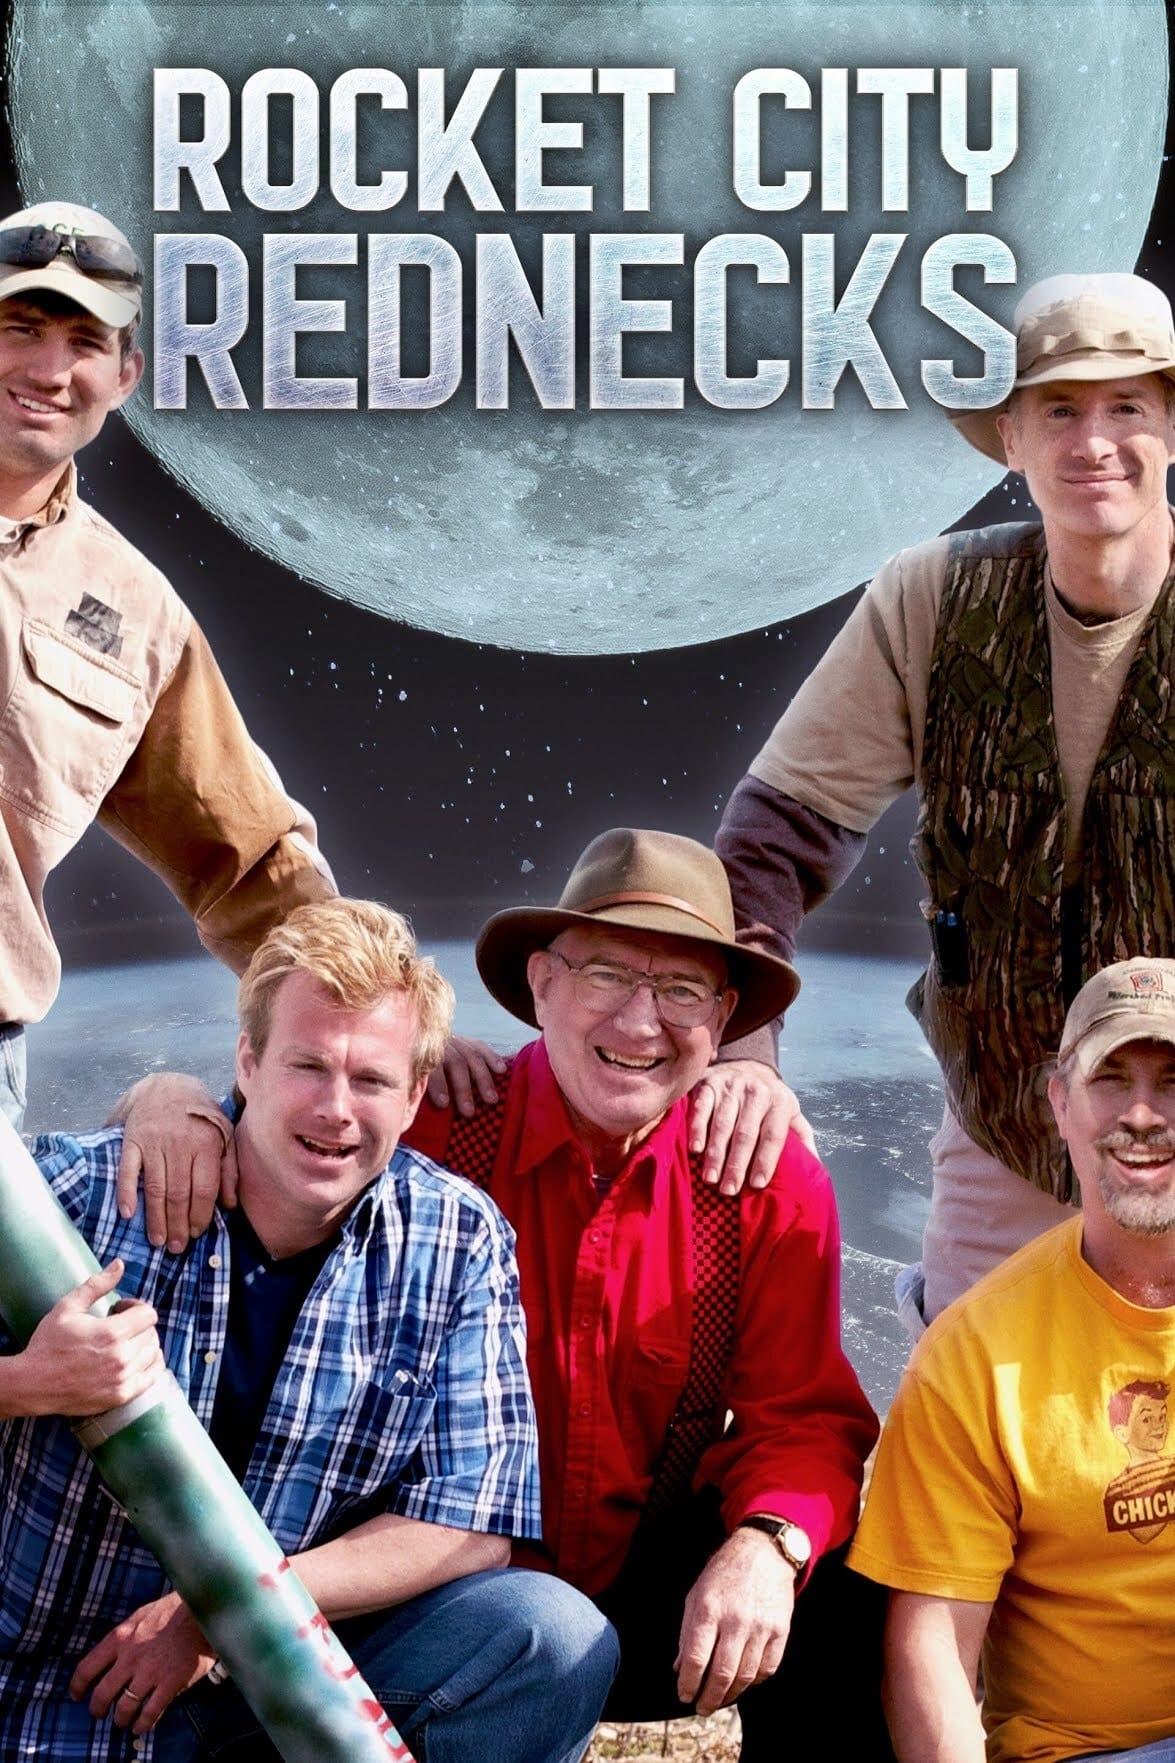 Rocket City Rednecks TV Shows About Dangerous